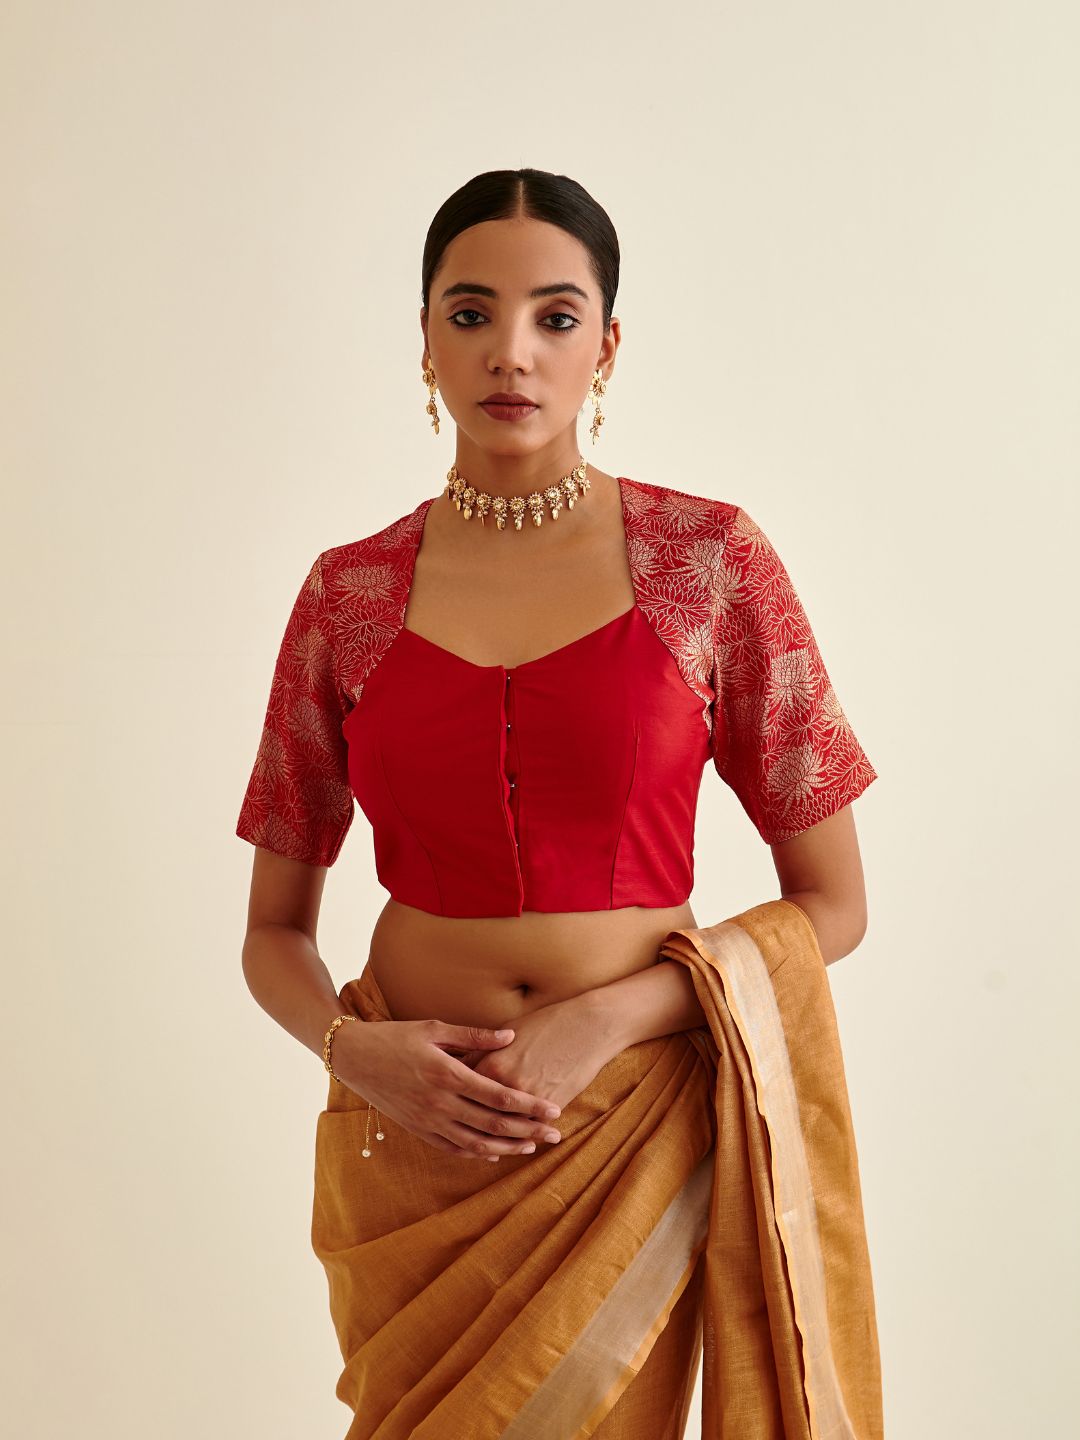 Banarasi zari bouse in Queen Anne neckline-scarlet red